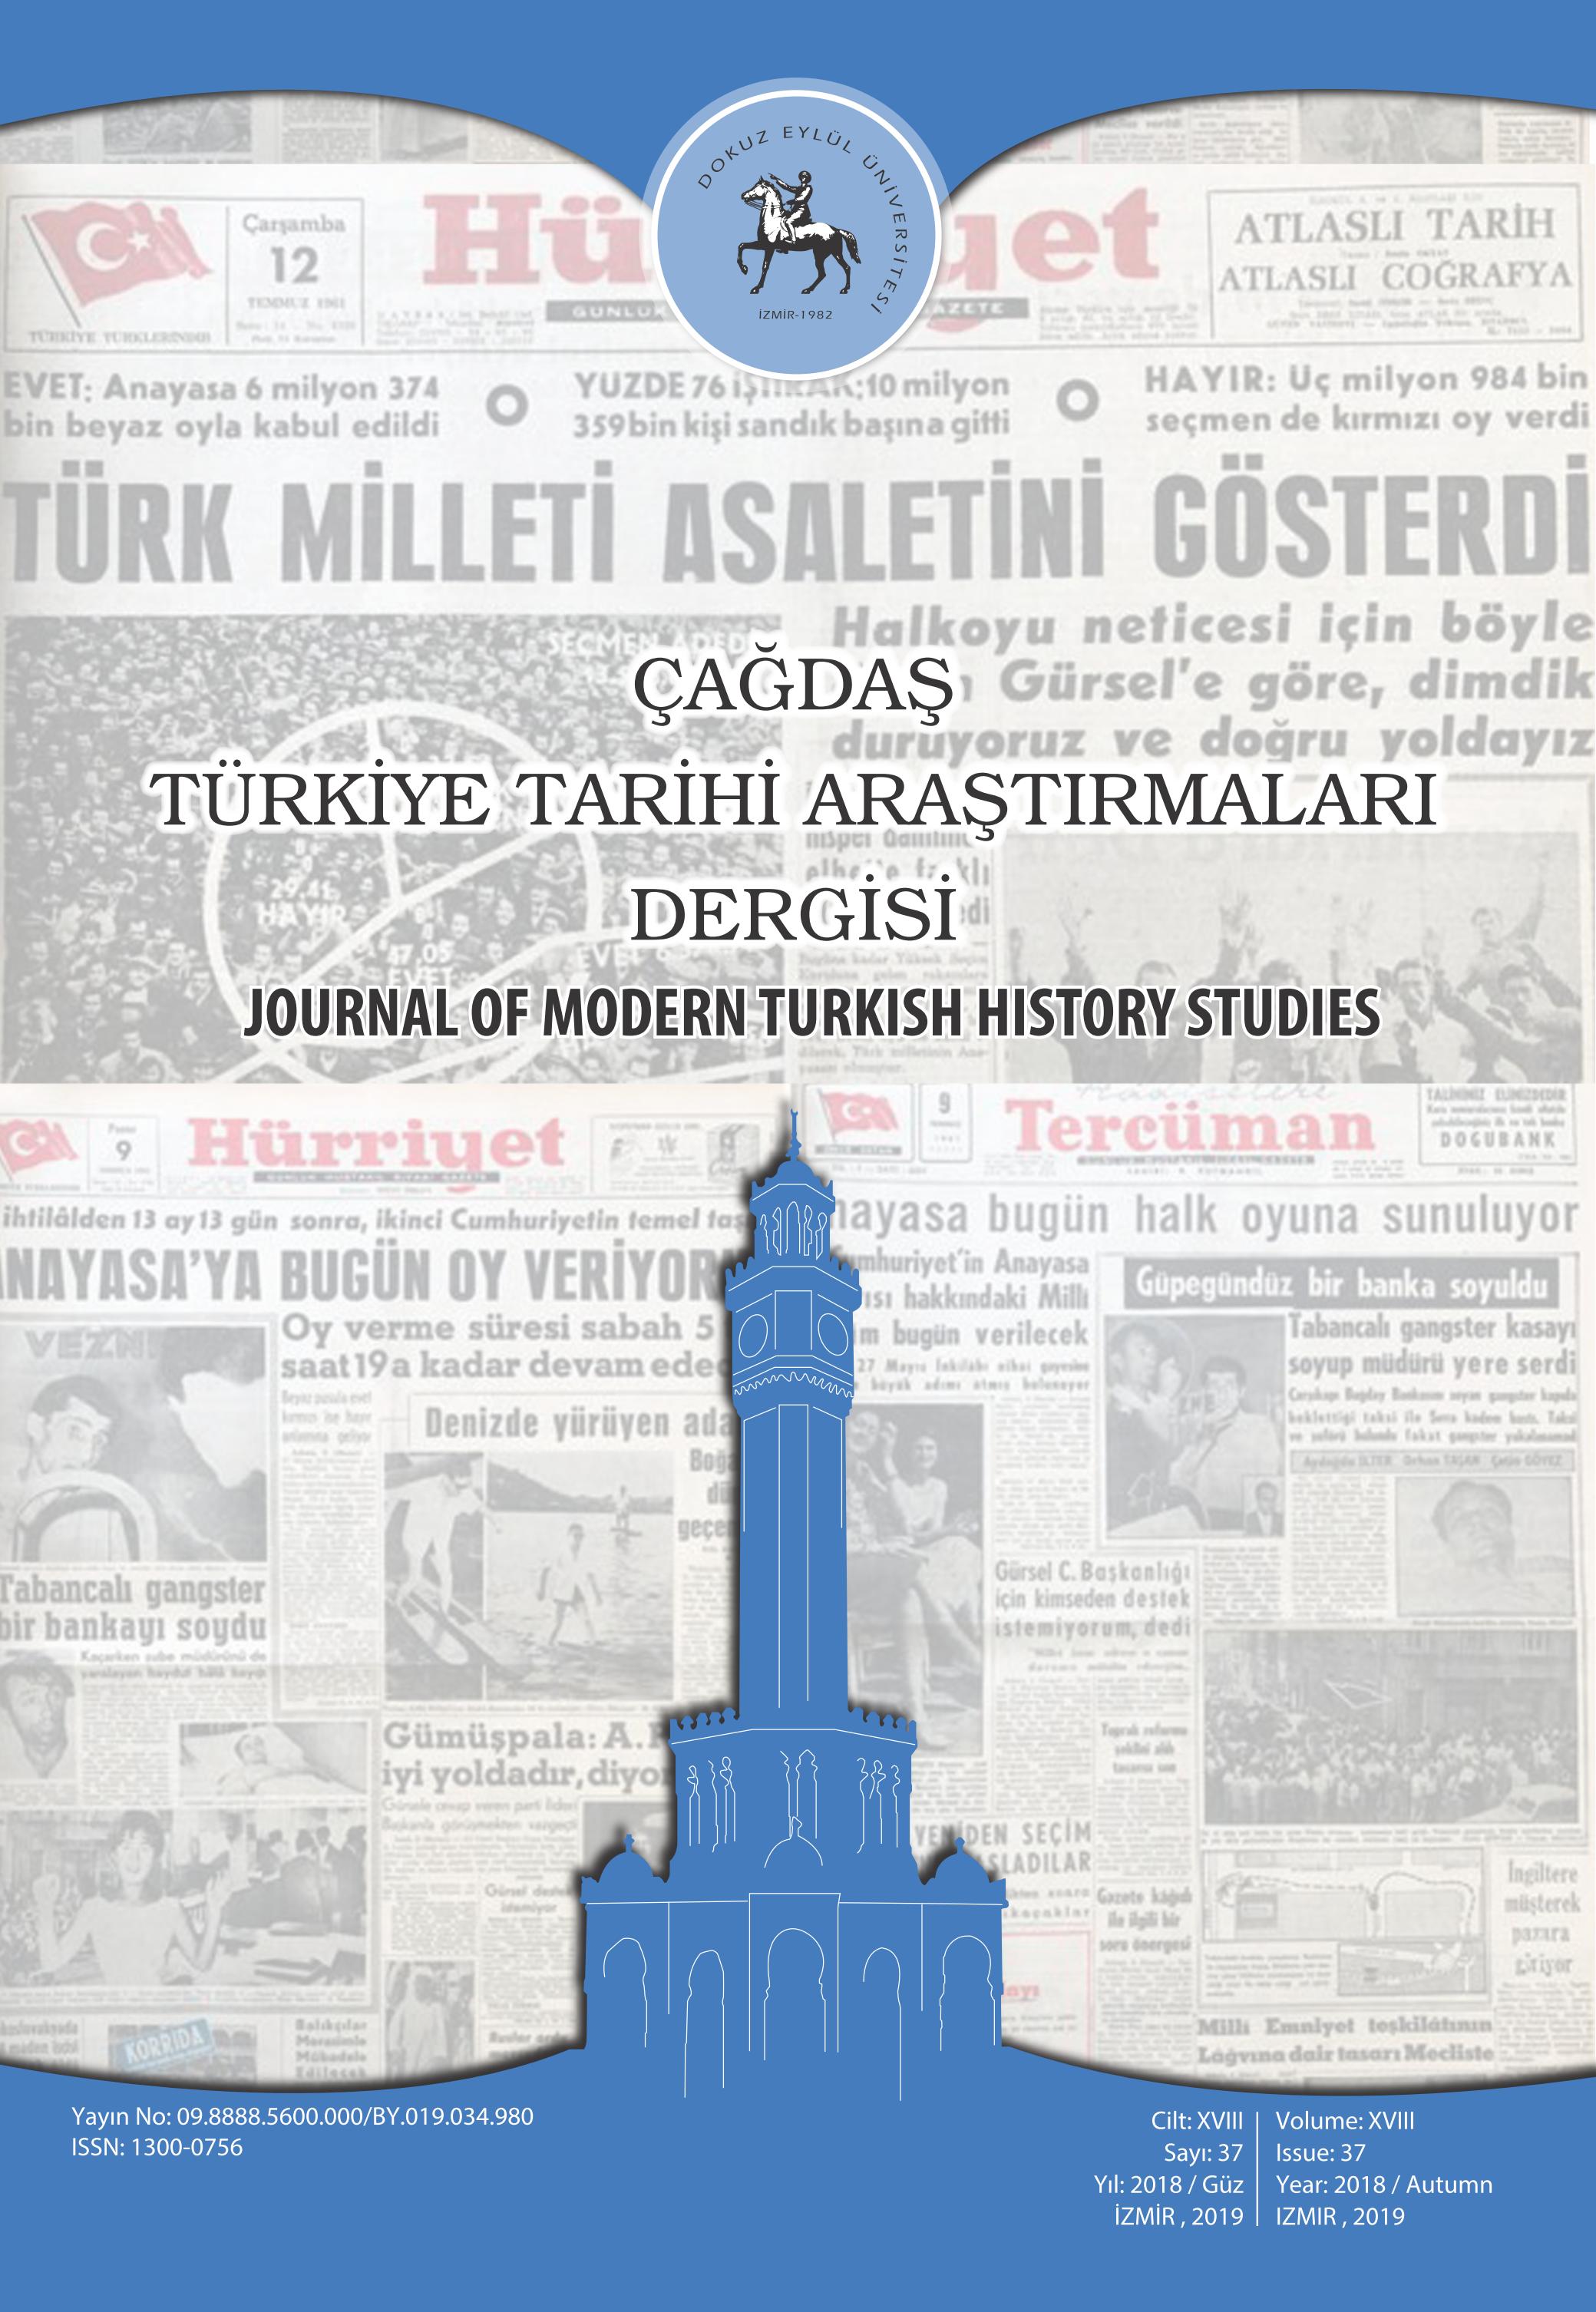 Çağdaş Türkiye Tarihi Araştırmaları Dergimizin 37. Sayısı (2018/ Güz) Yayınlandı.